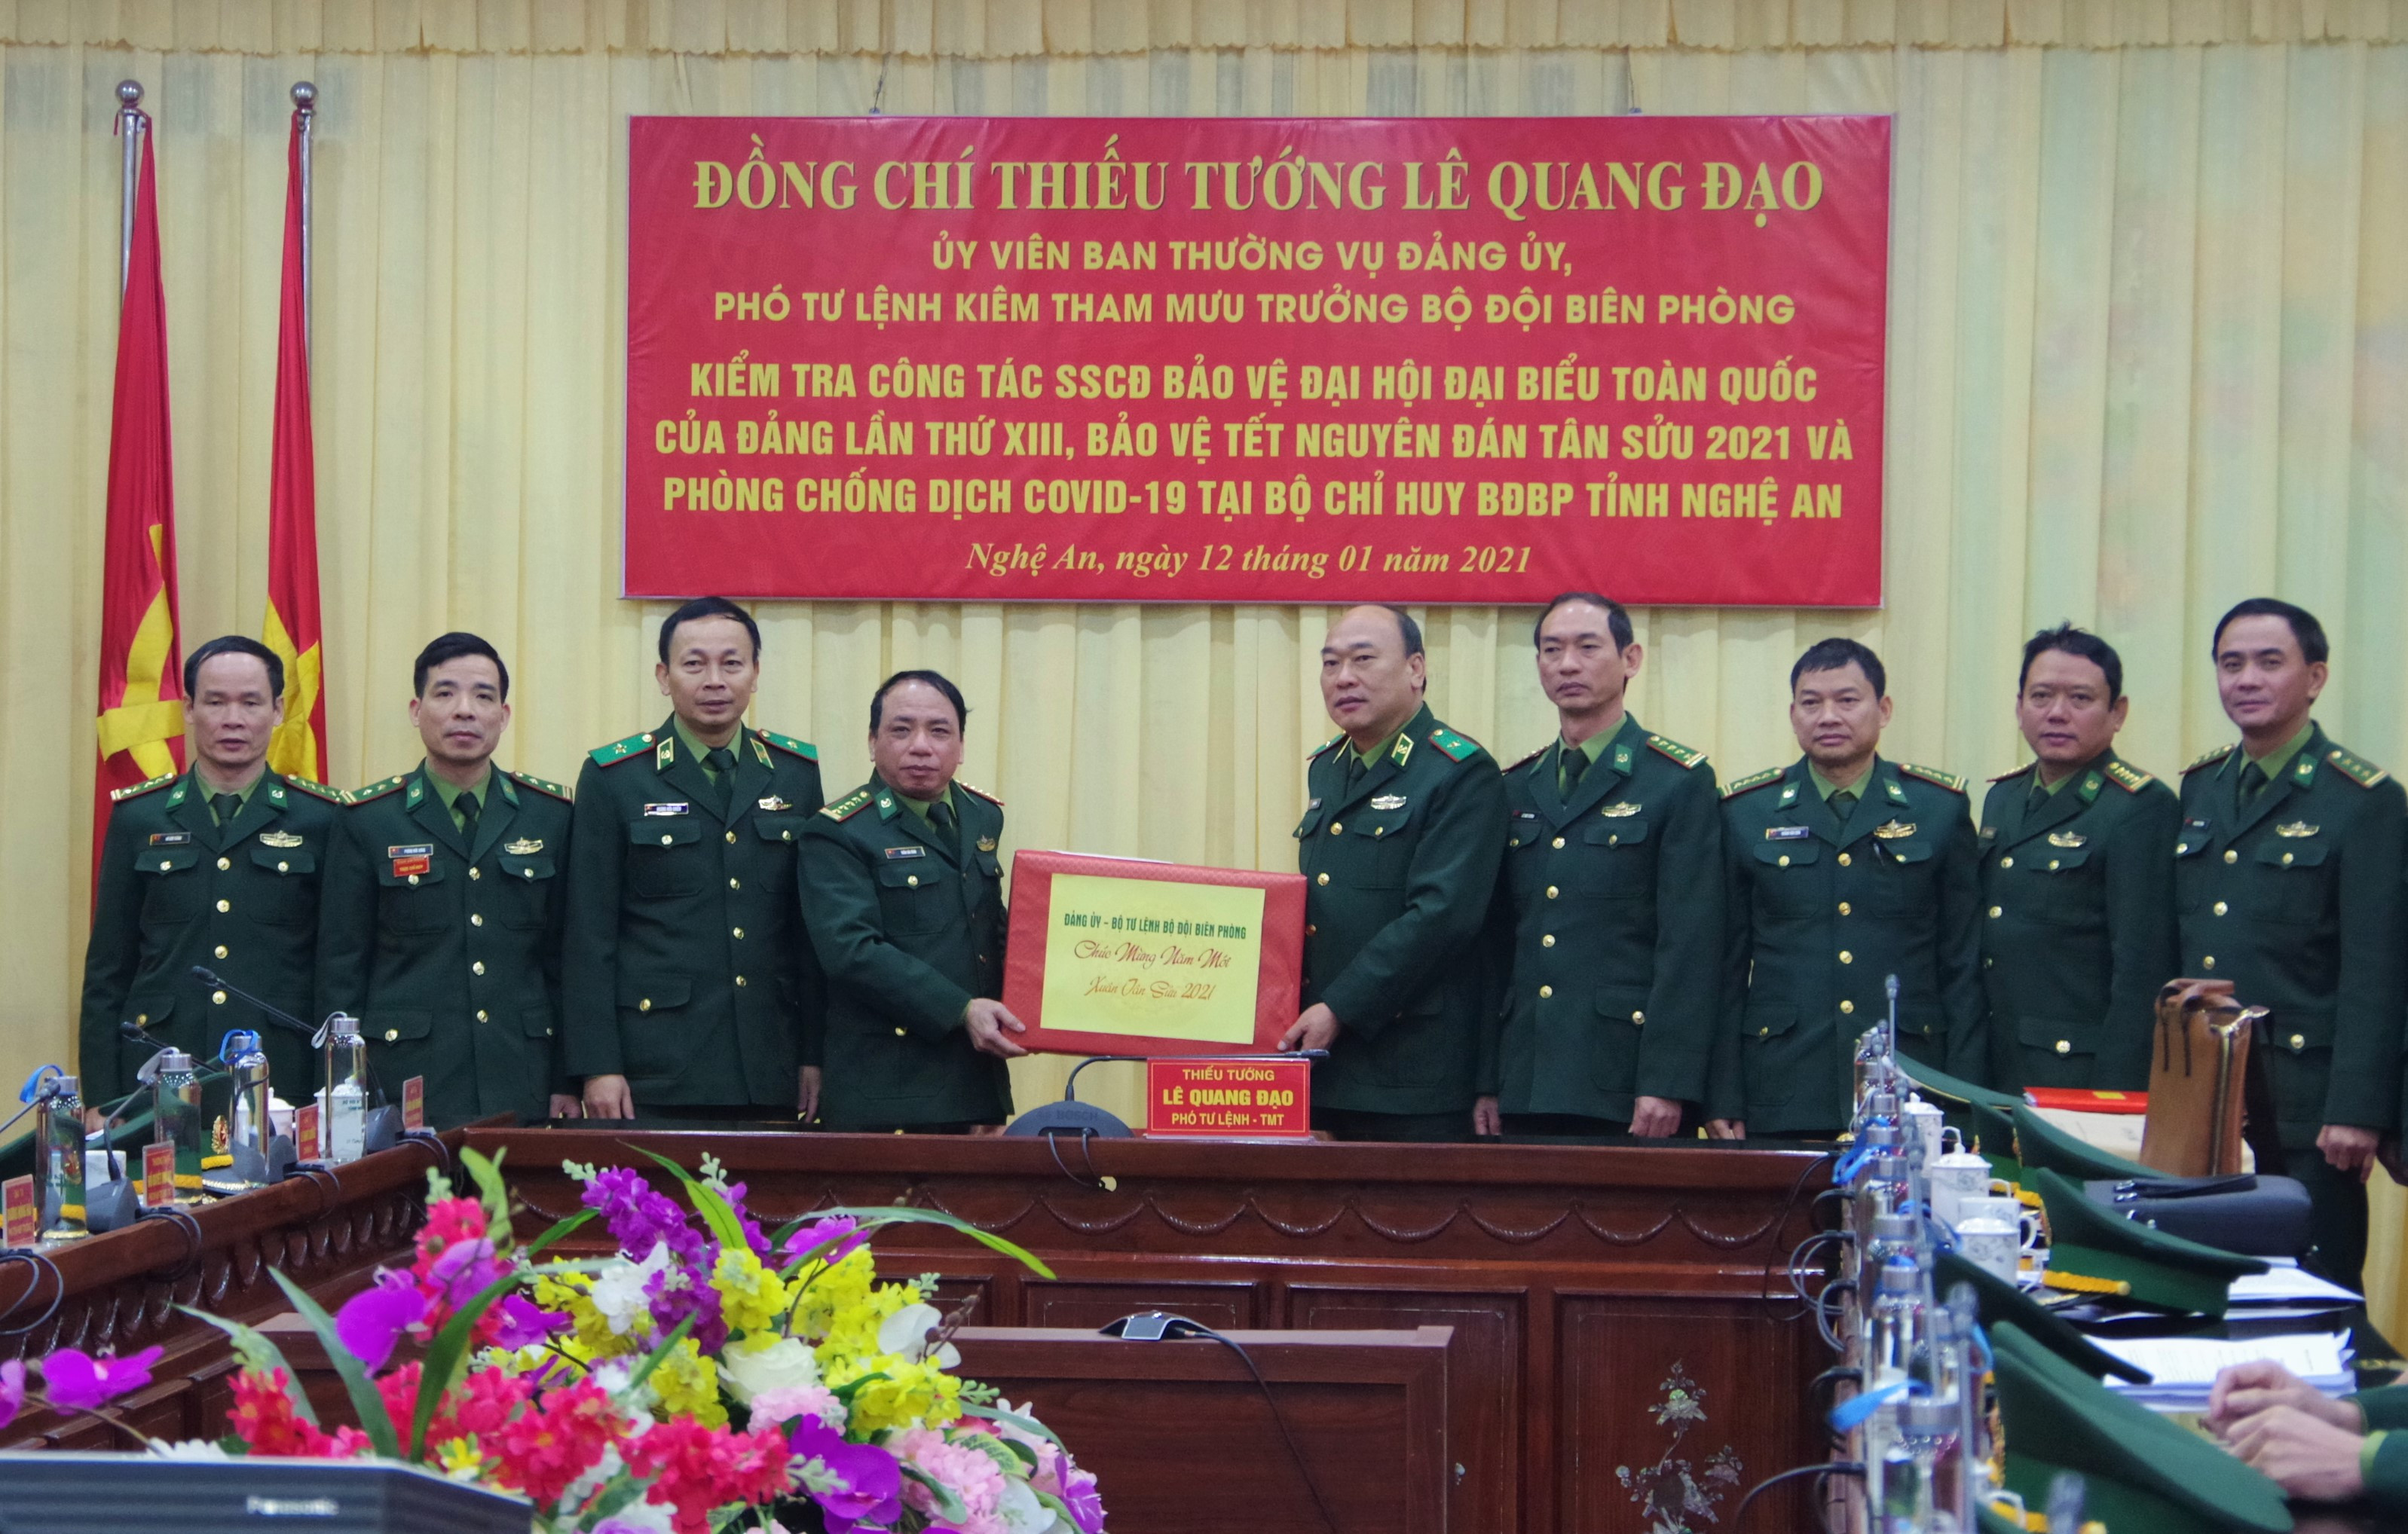 Thiếu tướng Lê Quang Đạo tặng quà, chúc Tết Bộ Chỉ huy BĐBP Nghệ An